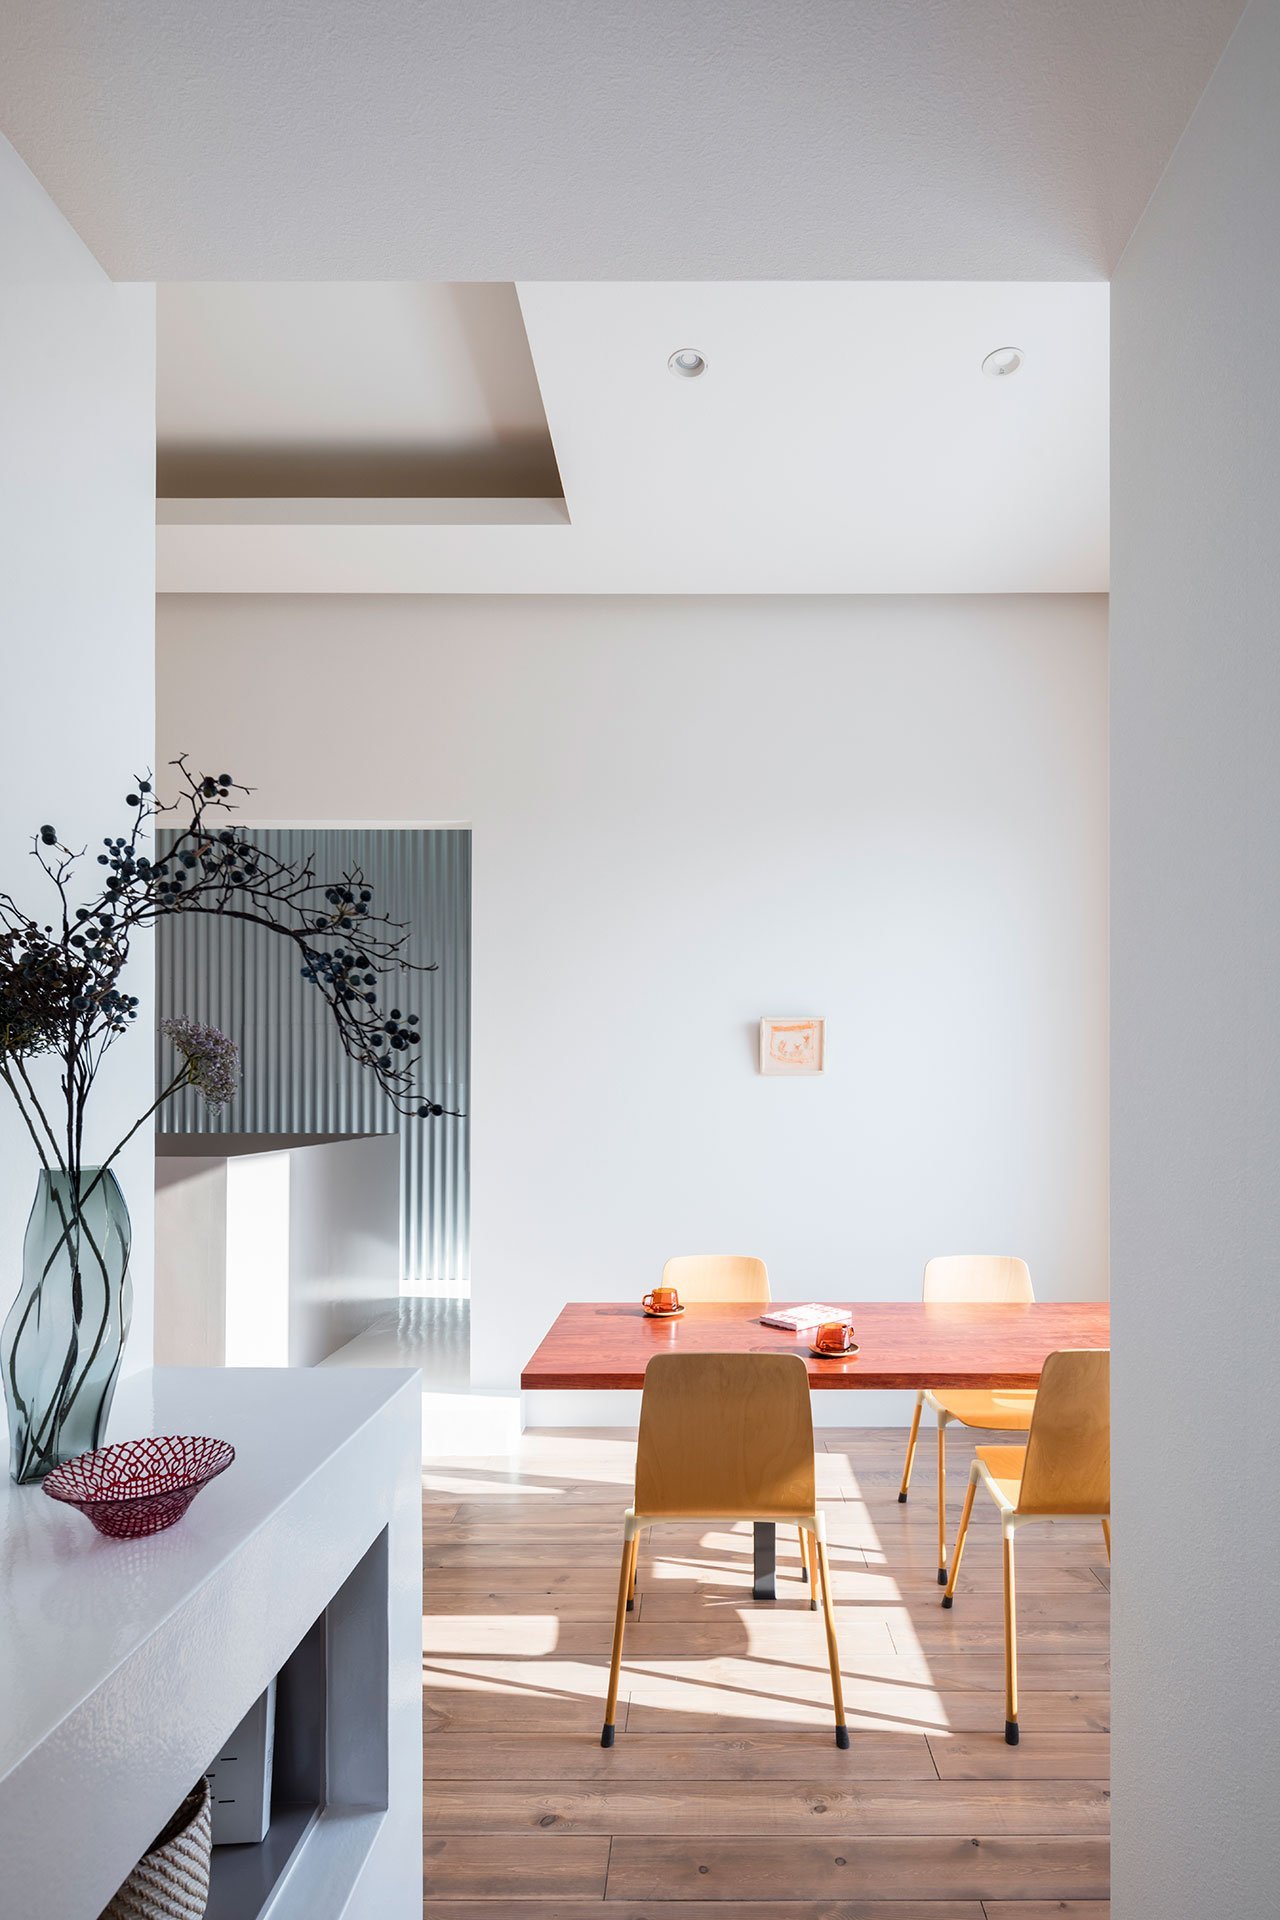 Casa moderna con decoracion de estilo minimalista en japon comedor con sillas de madera